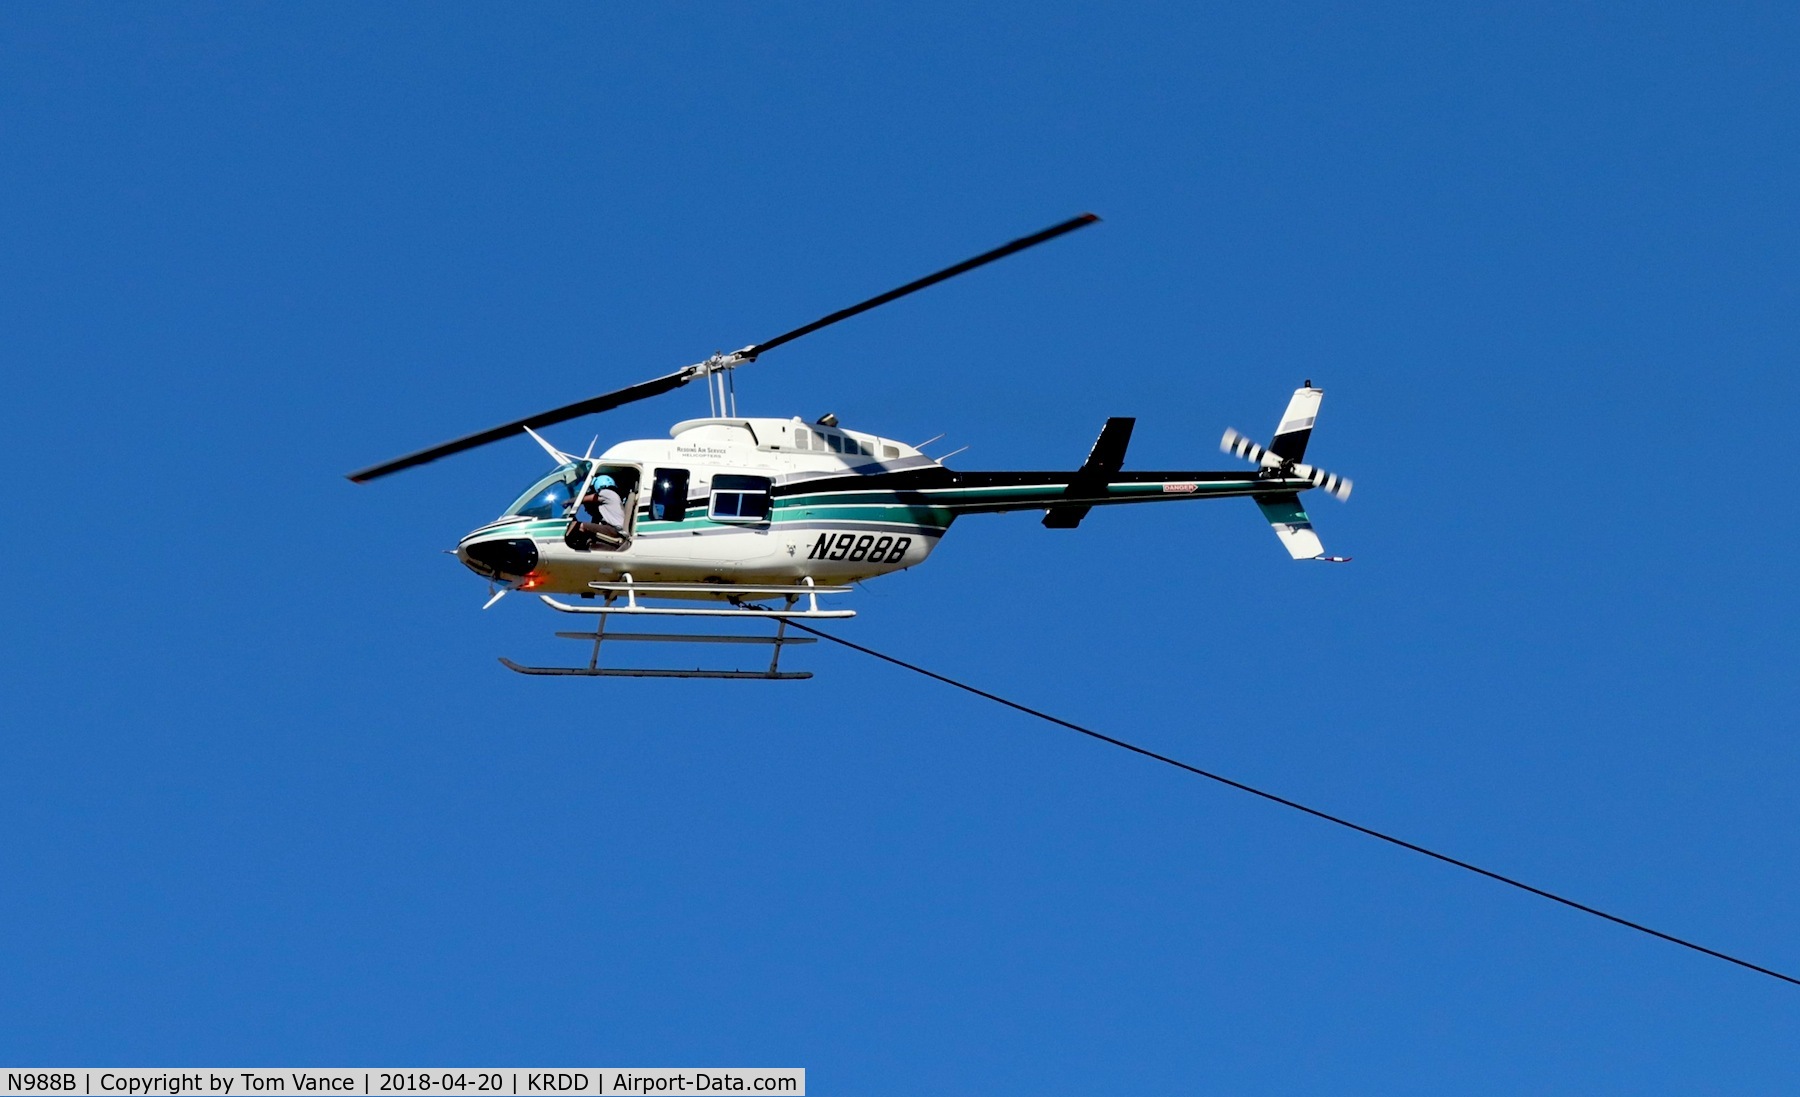 N988B, 2005 Bell 206L-4 LongRanger LongRanger C/N 52304, N988B returning to Redding CA after fire bucket training